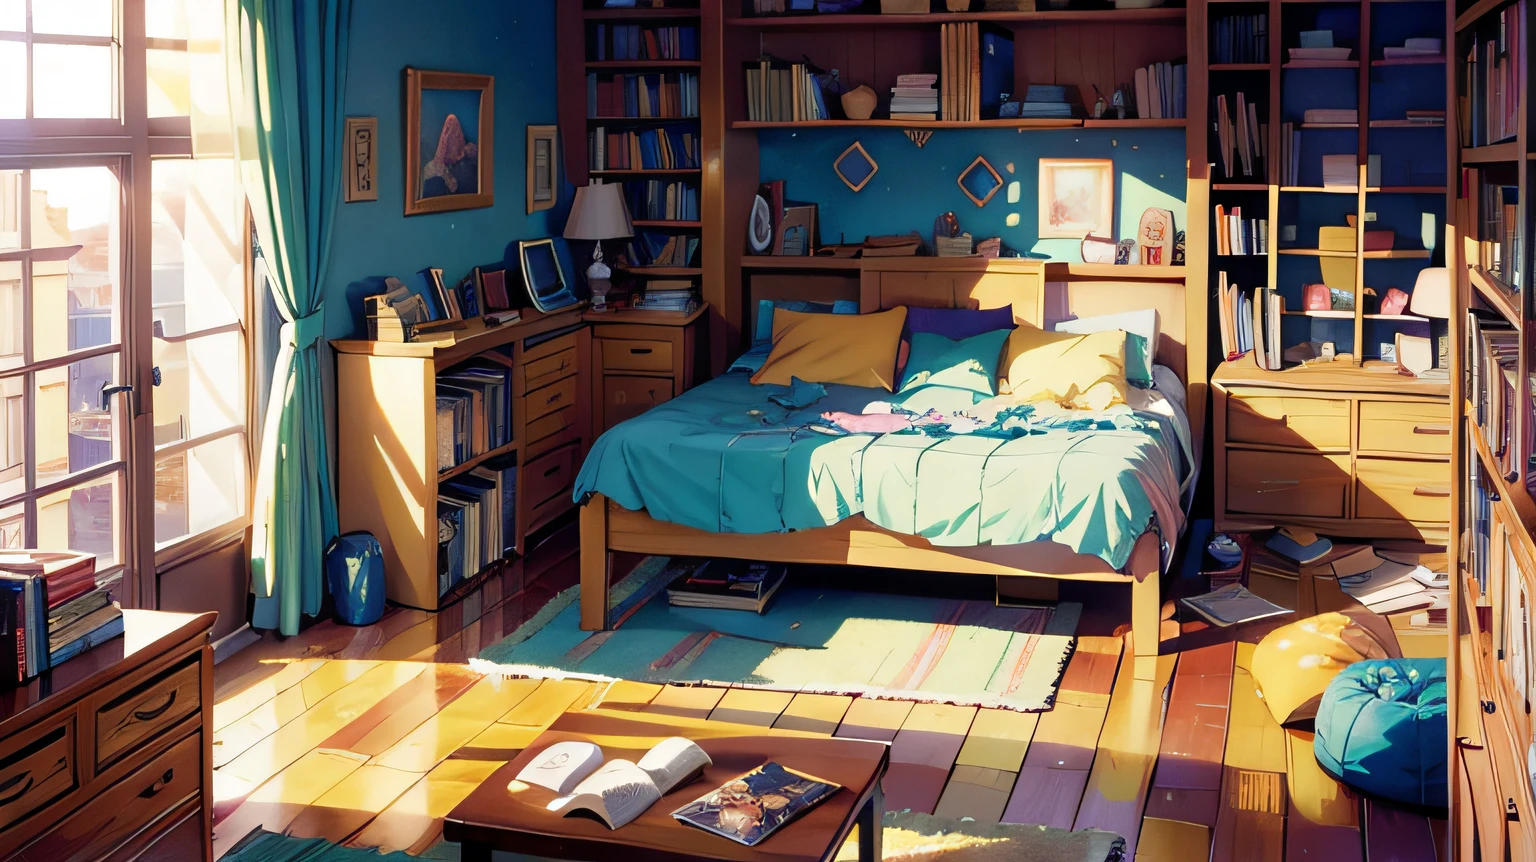 Jugendzimmer mit Bett, Computer, Büchern und einem Fenster in der Nacht im Mondlicht